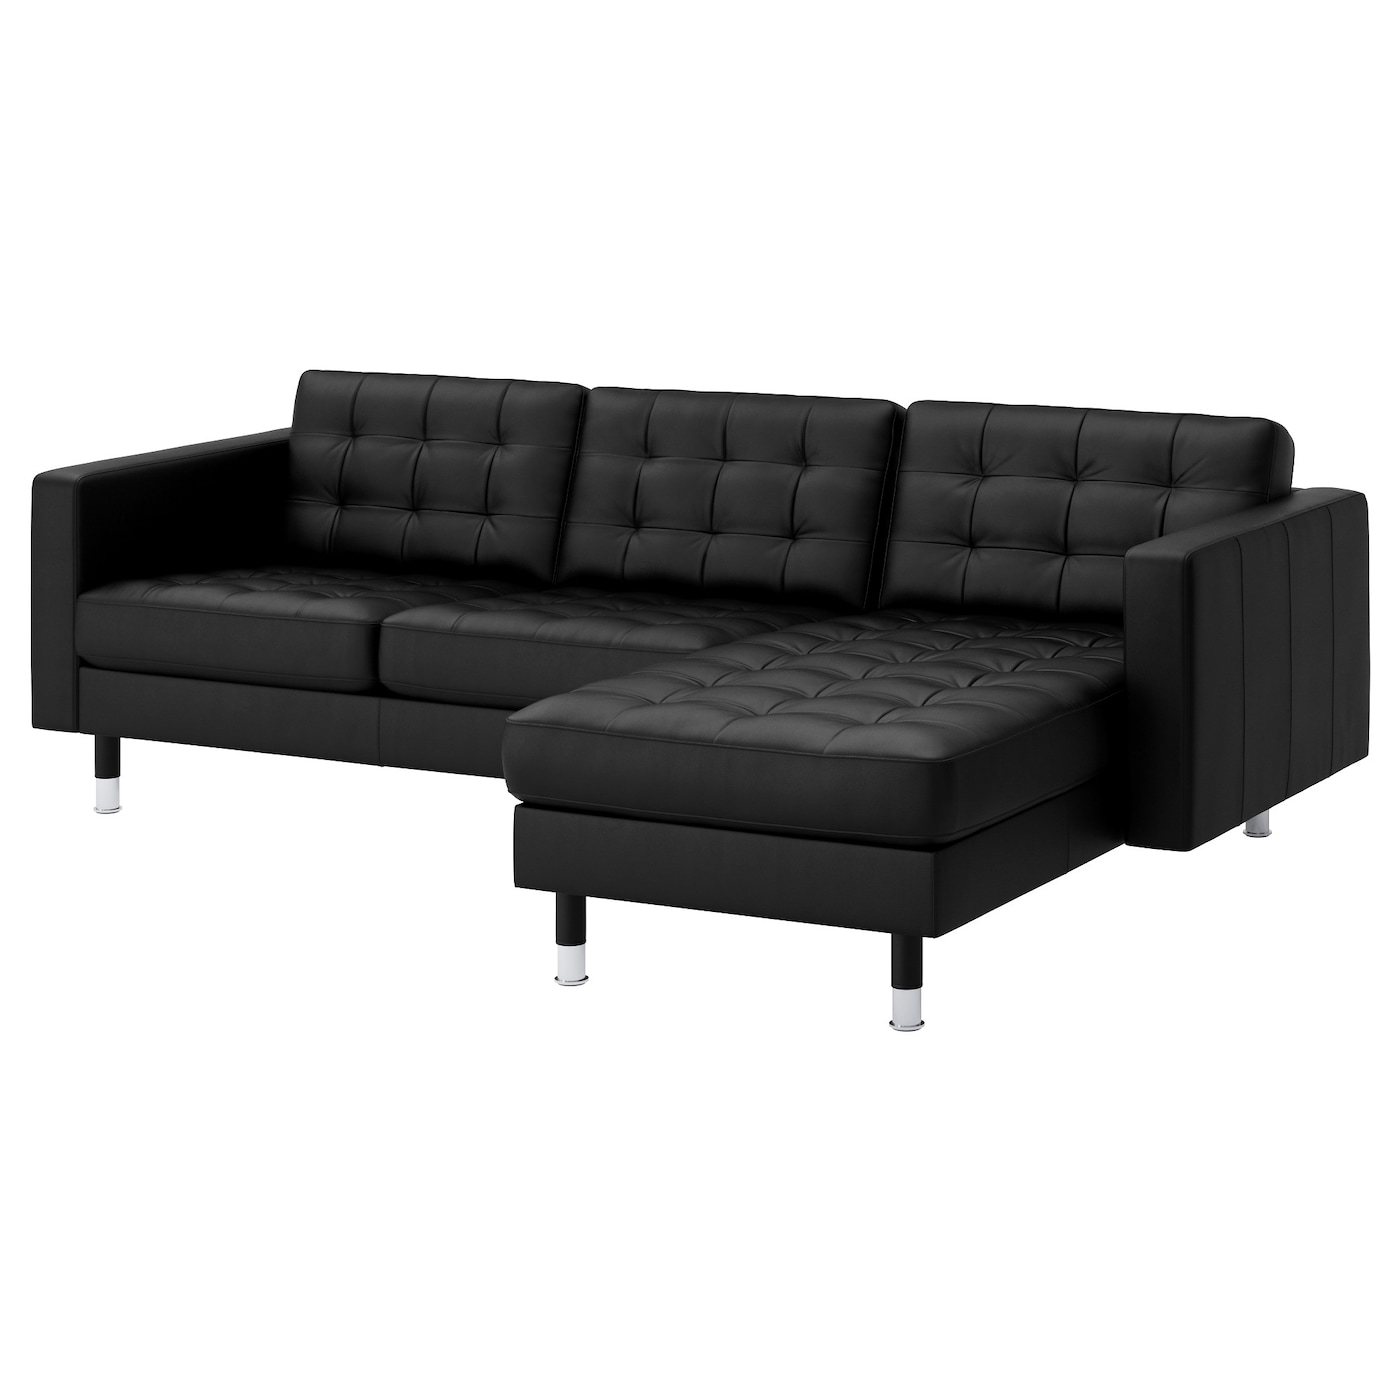 3-местный диван с шезлонгом - IKEA LANDSKRONA, 89x240см, черный/серебристый, ЛАНДСКРУНА ИКЕА